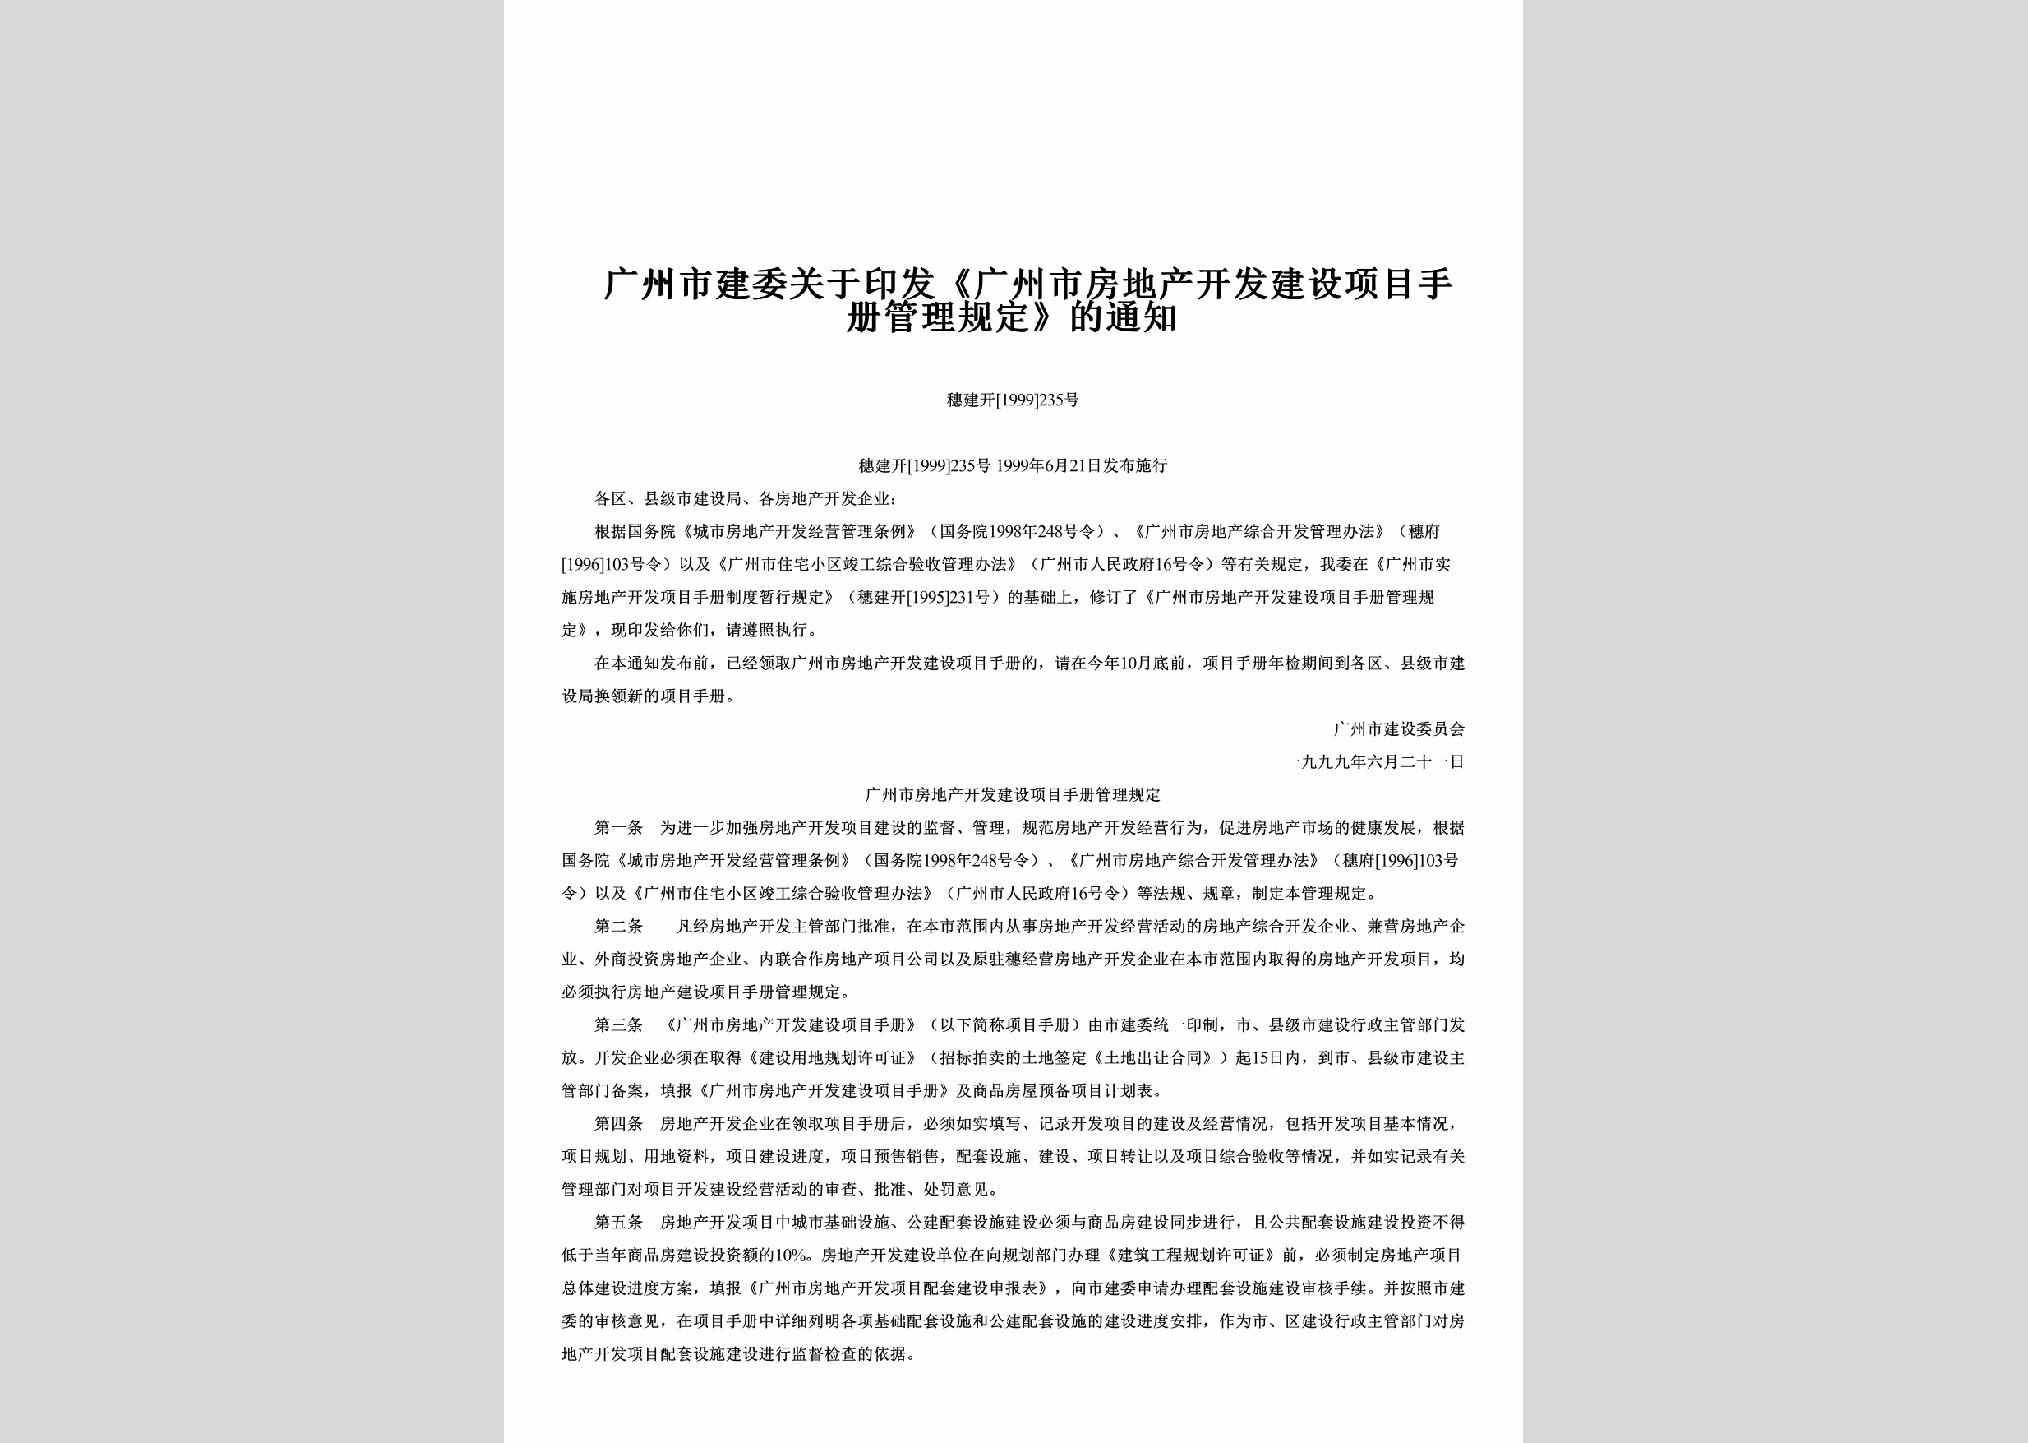 穗建开[1999]235号：广州市建委关于印发《广州市房地产开发建设项目手册管理规定》的通知